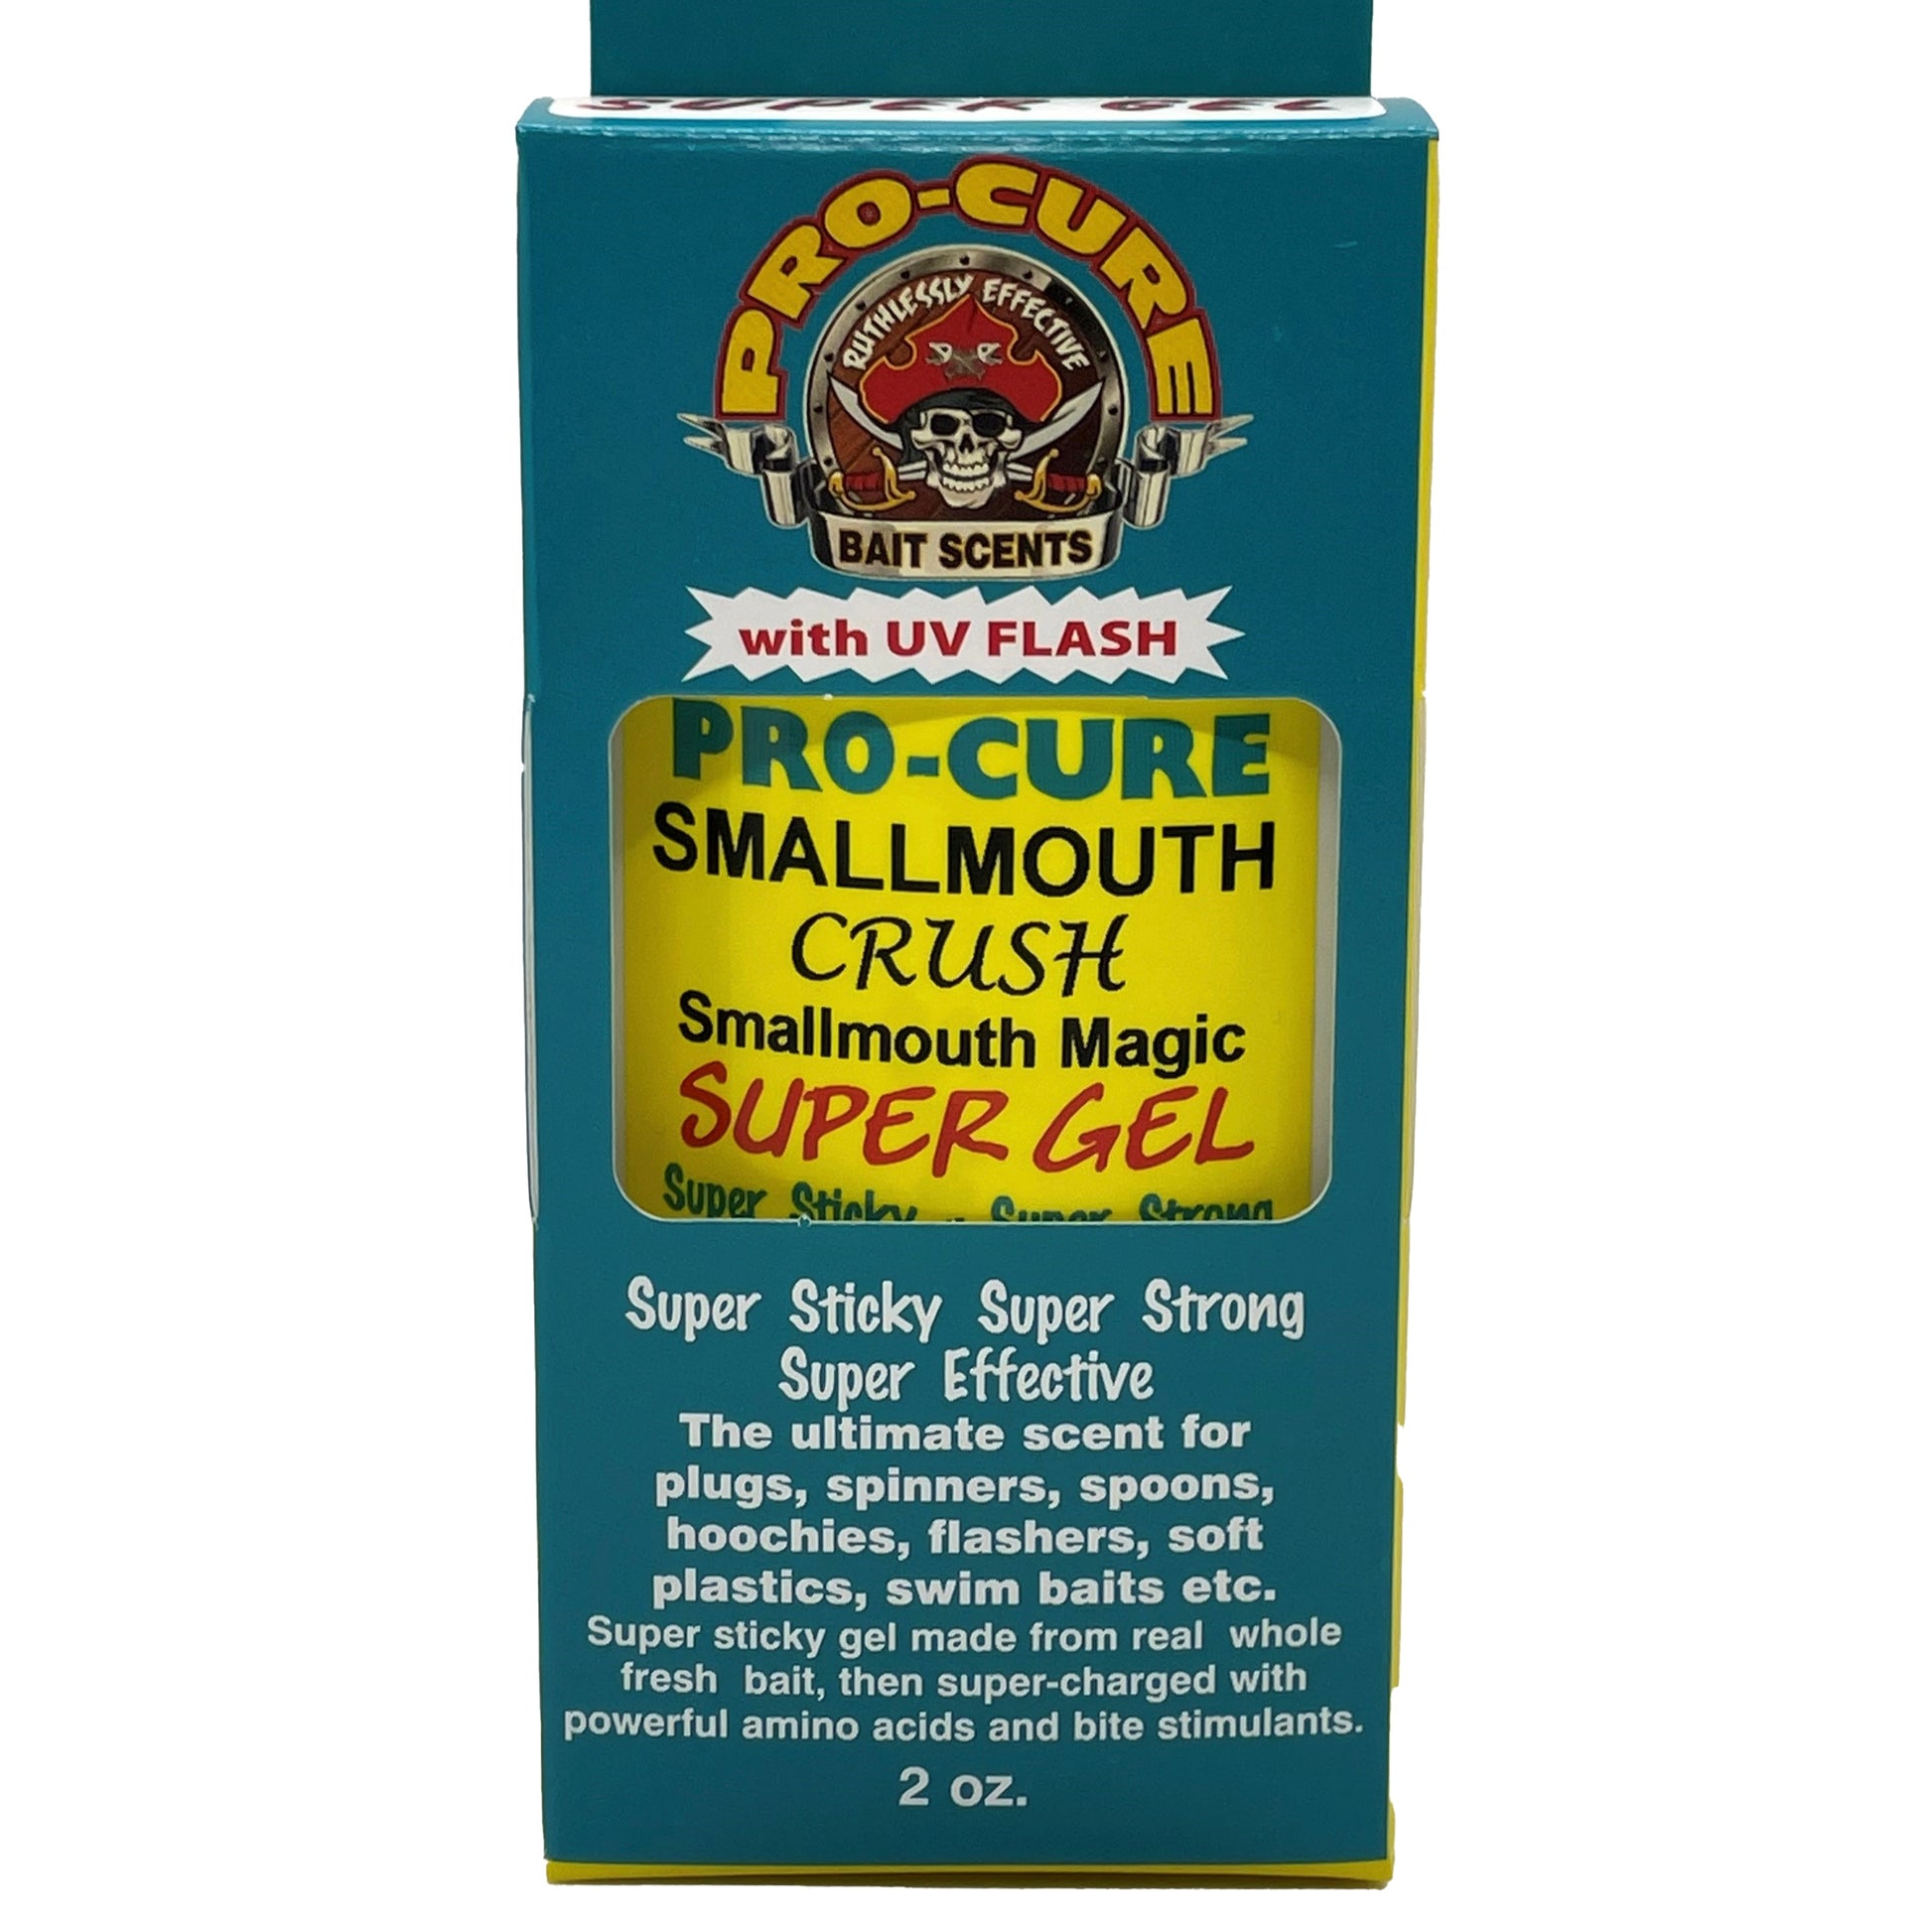 Pro-Cure Super Gel Bait Scent